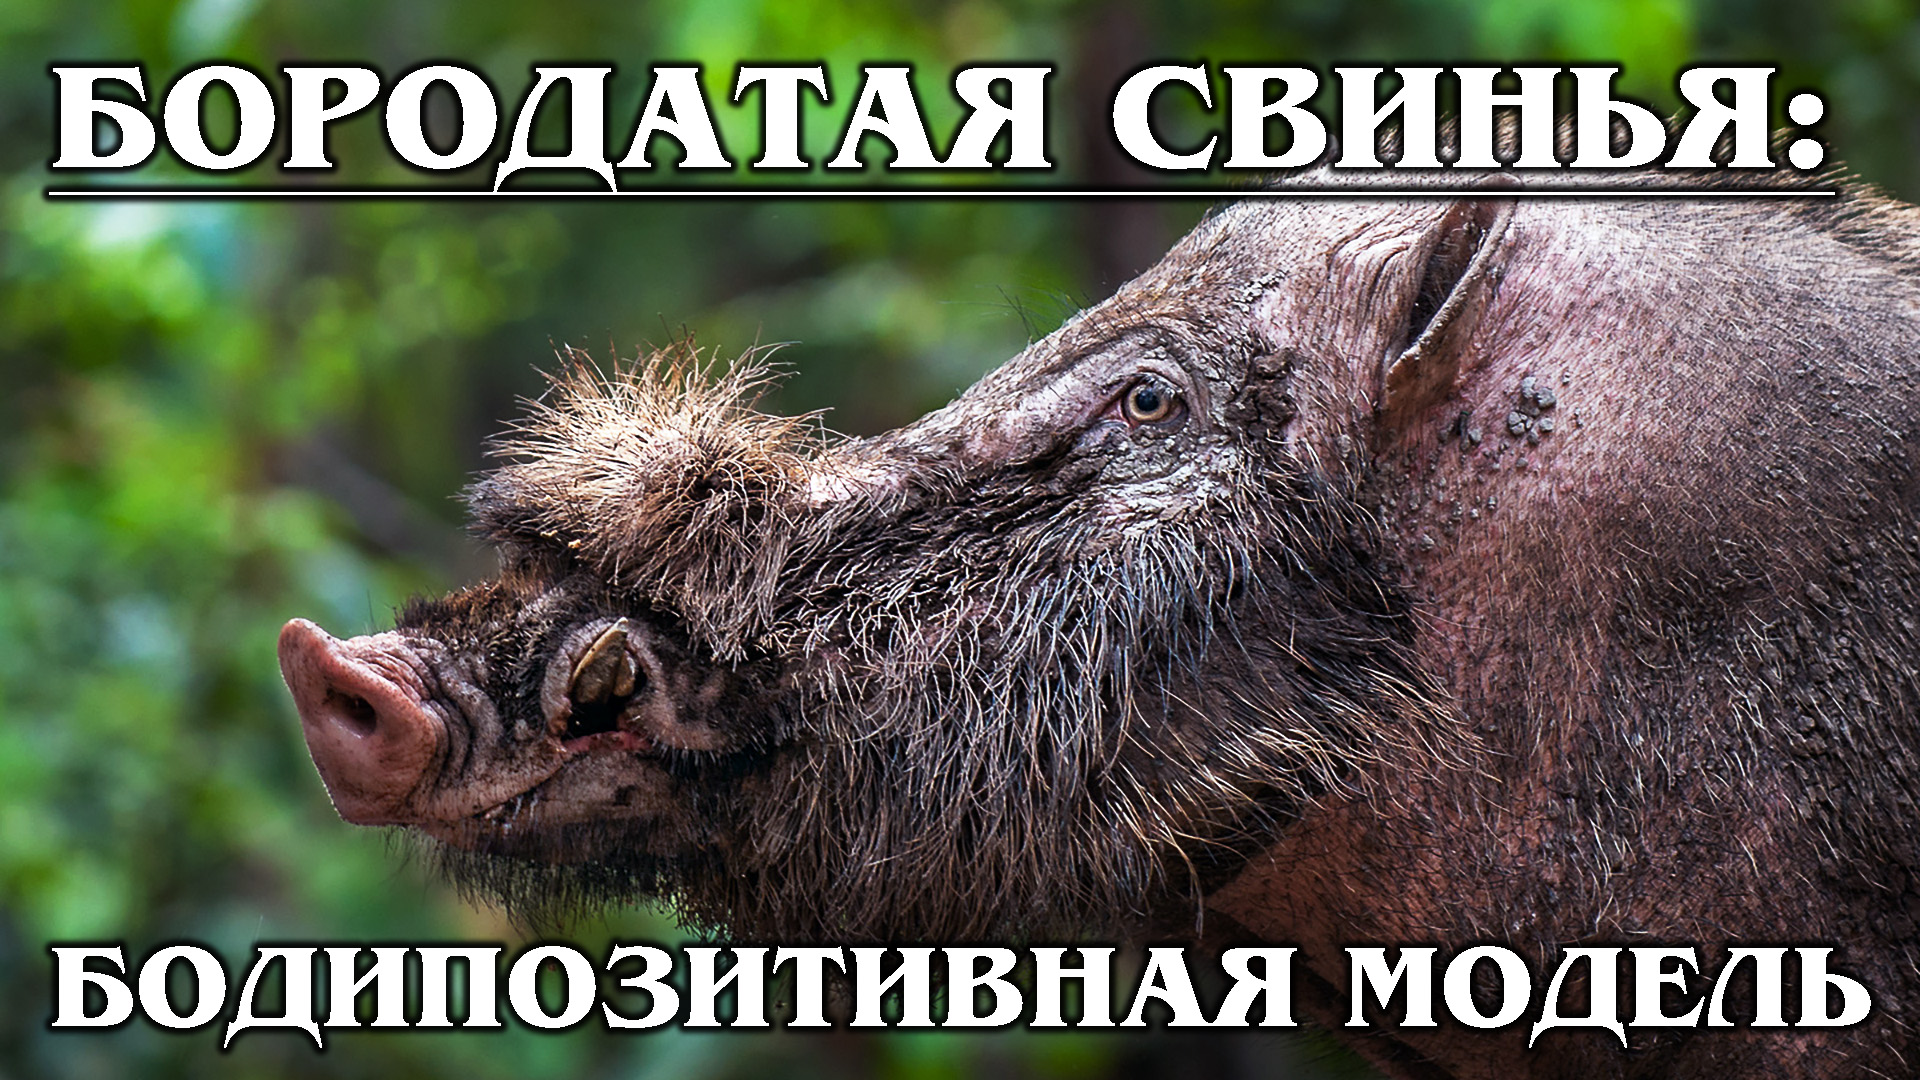 БОРОДАТАЯ СВИНЬЯ: Умное и НЕ грязное животное | Интересные факты про свиней и животных